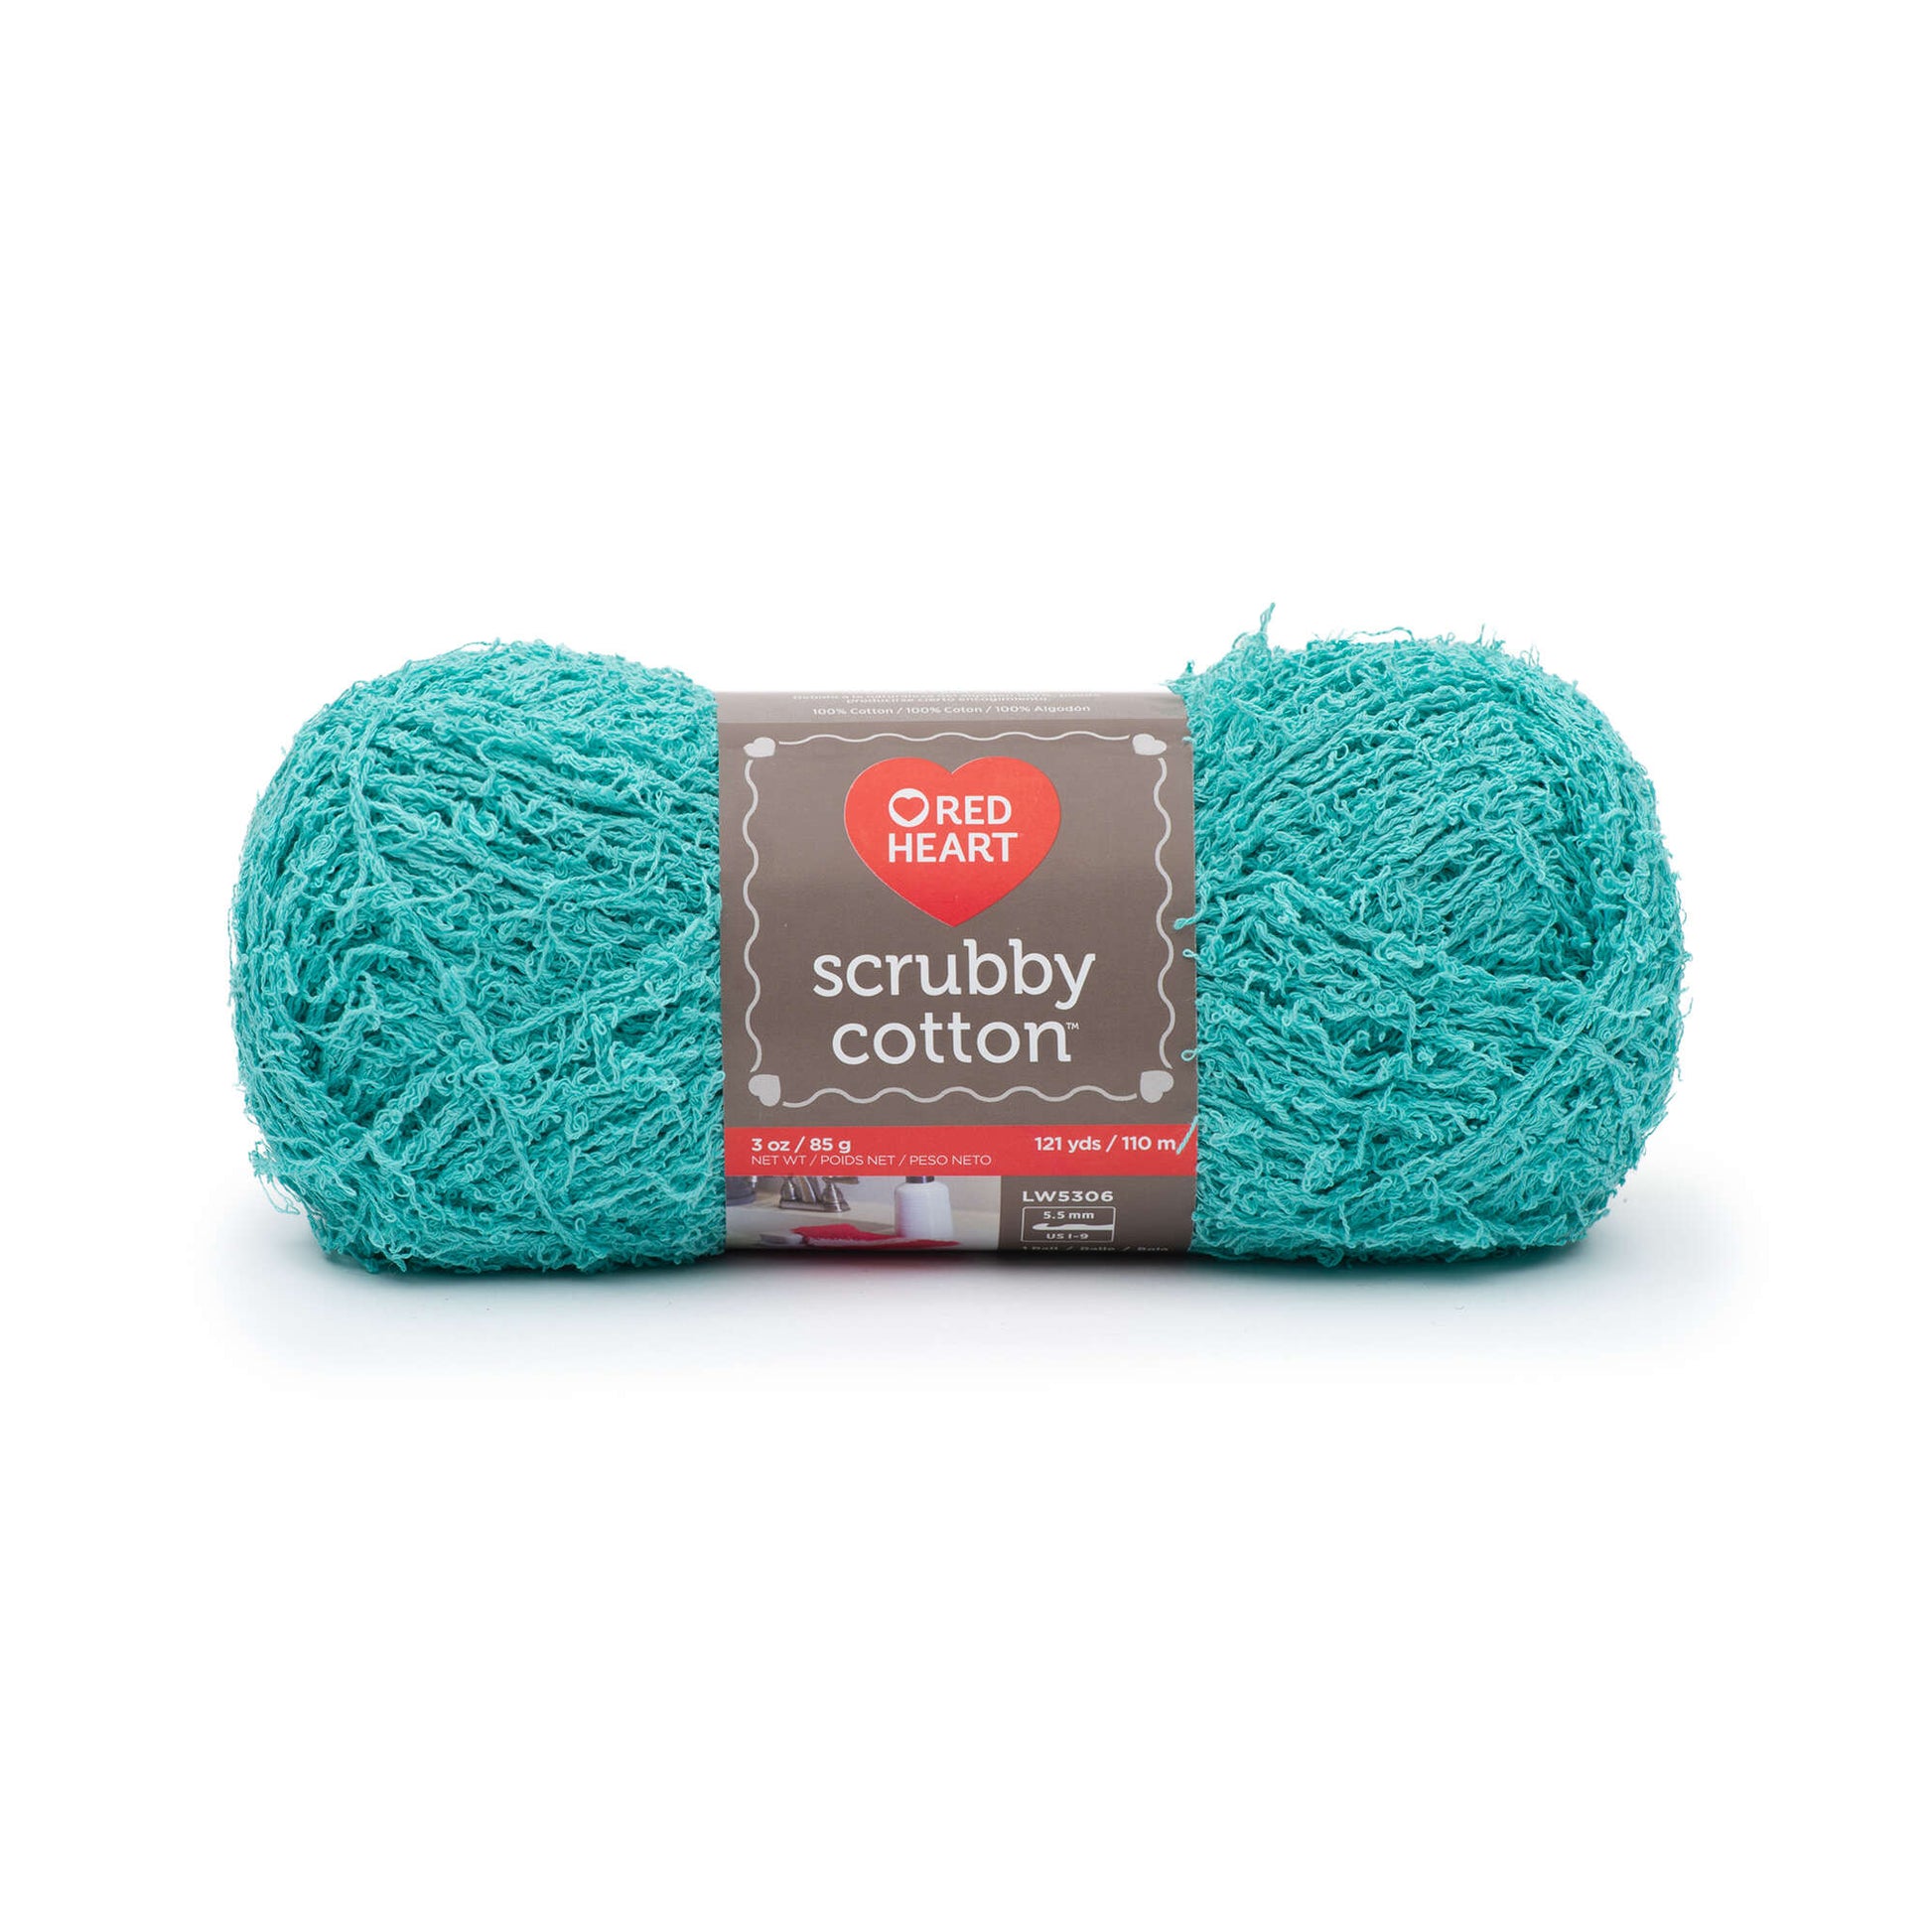 Red Heart Scrubby Cotton Yarn - Clearance shades Fiji